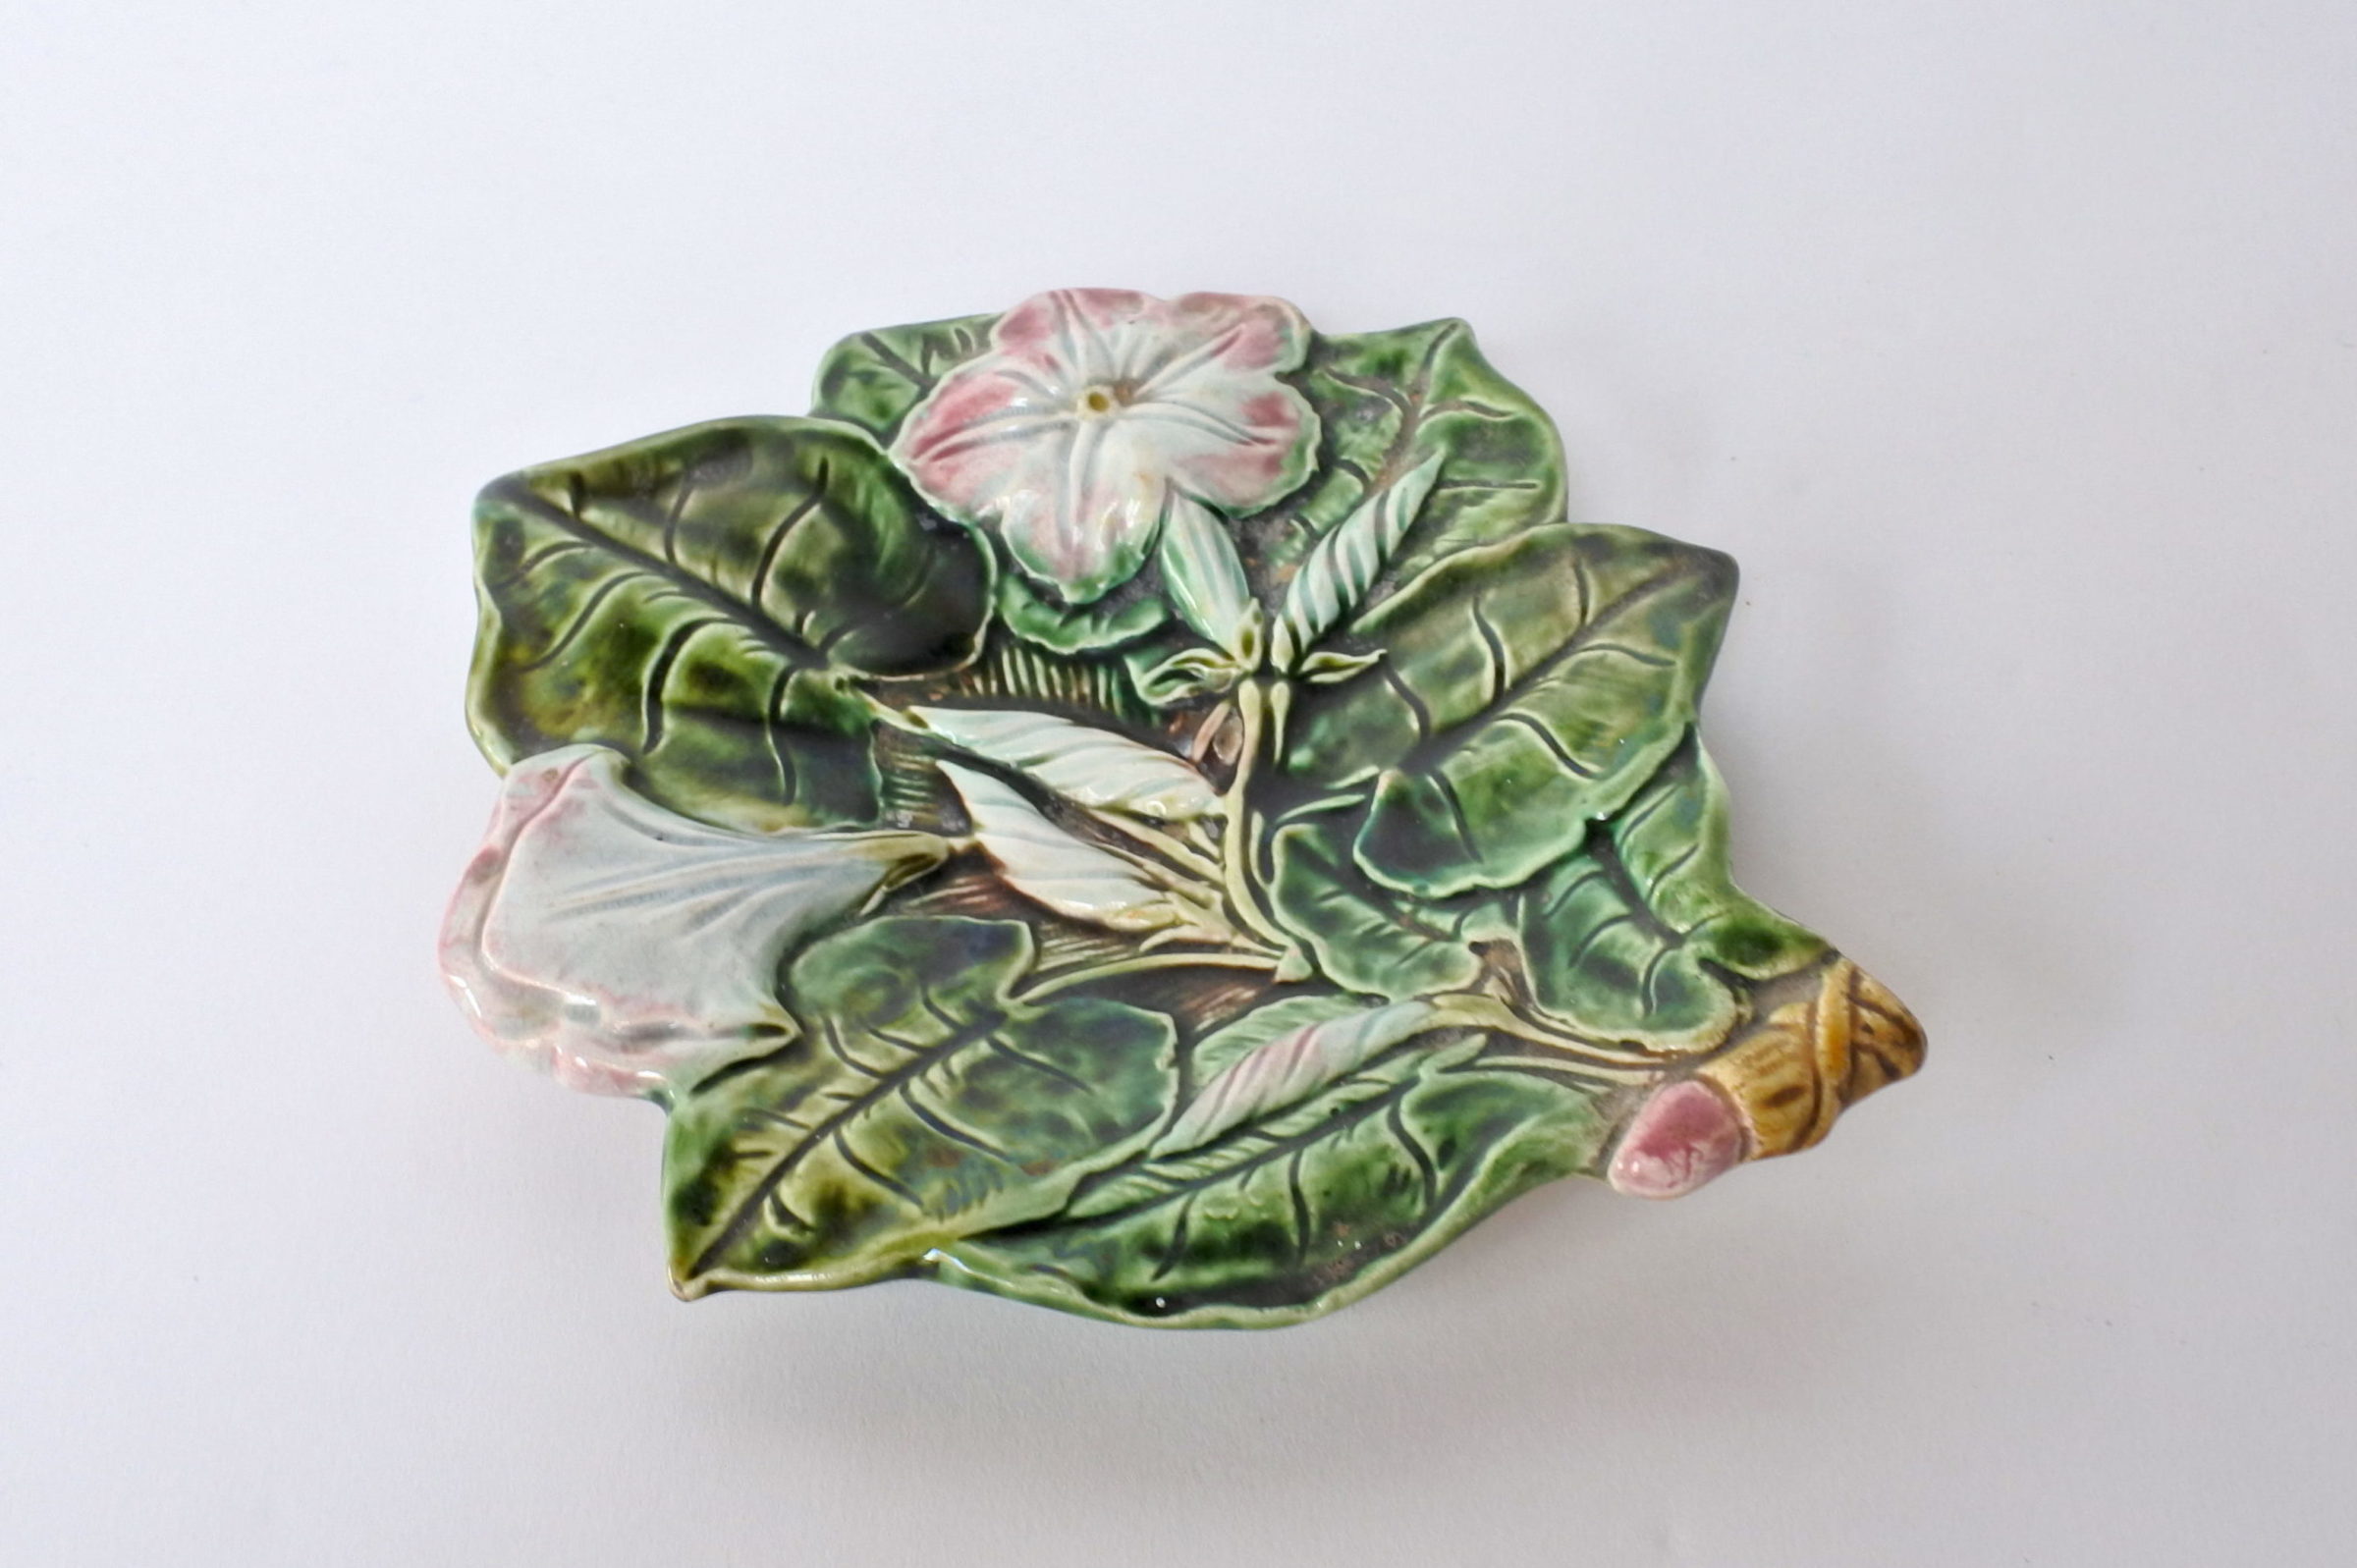 Svuotatasche in ceramica barbotine a forma di fiori e foglie